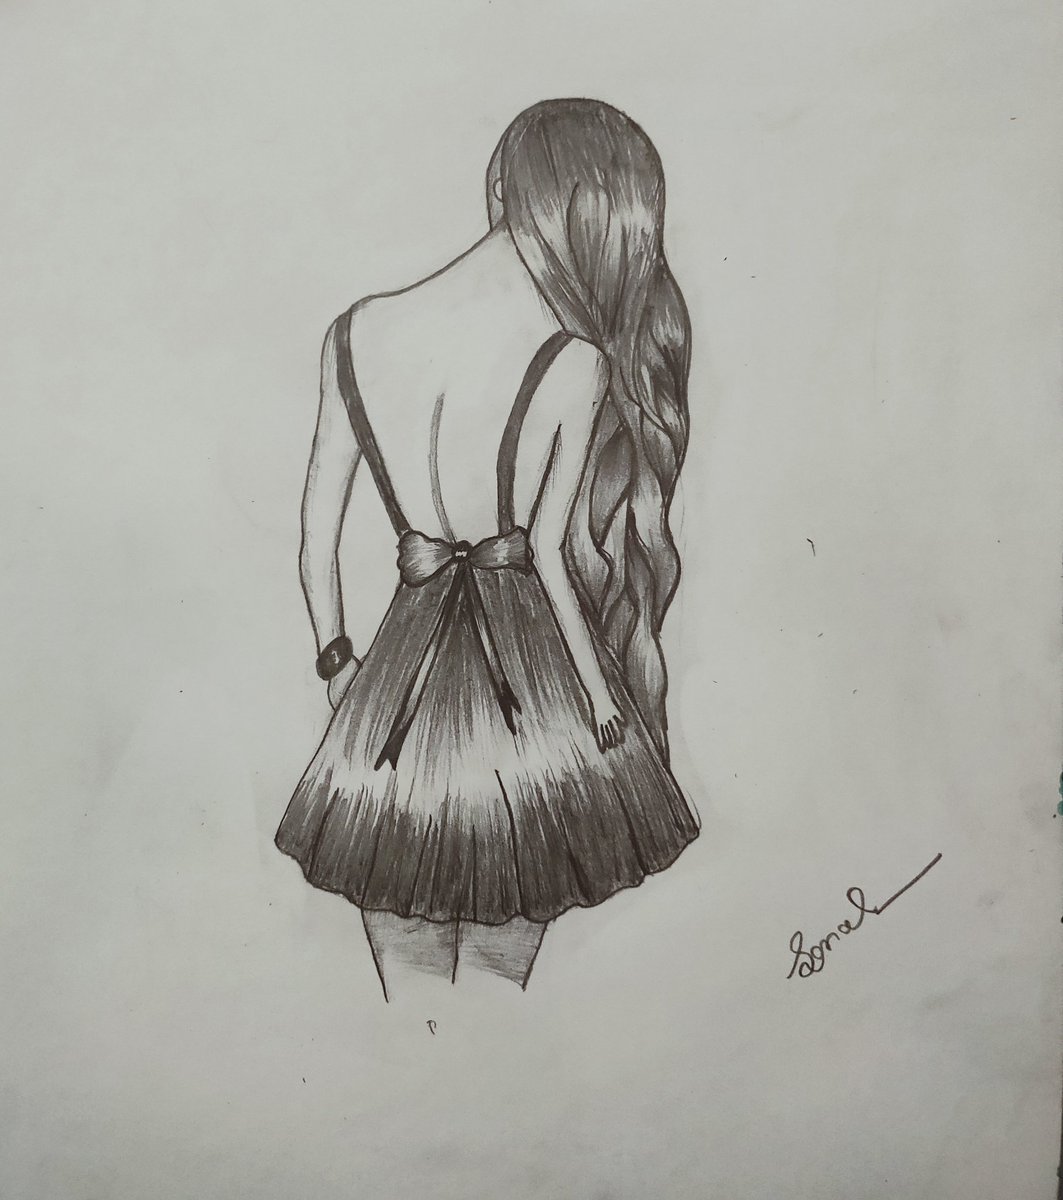 Dress Elegant Girl Sketch Vector Images (over 5,000)